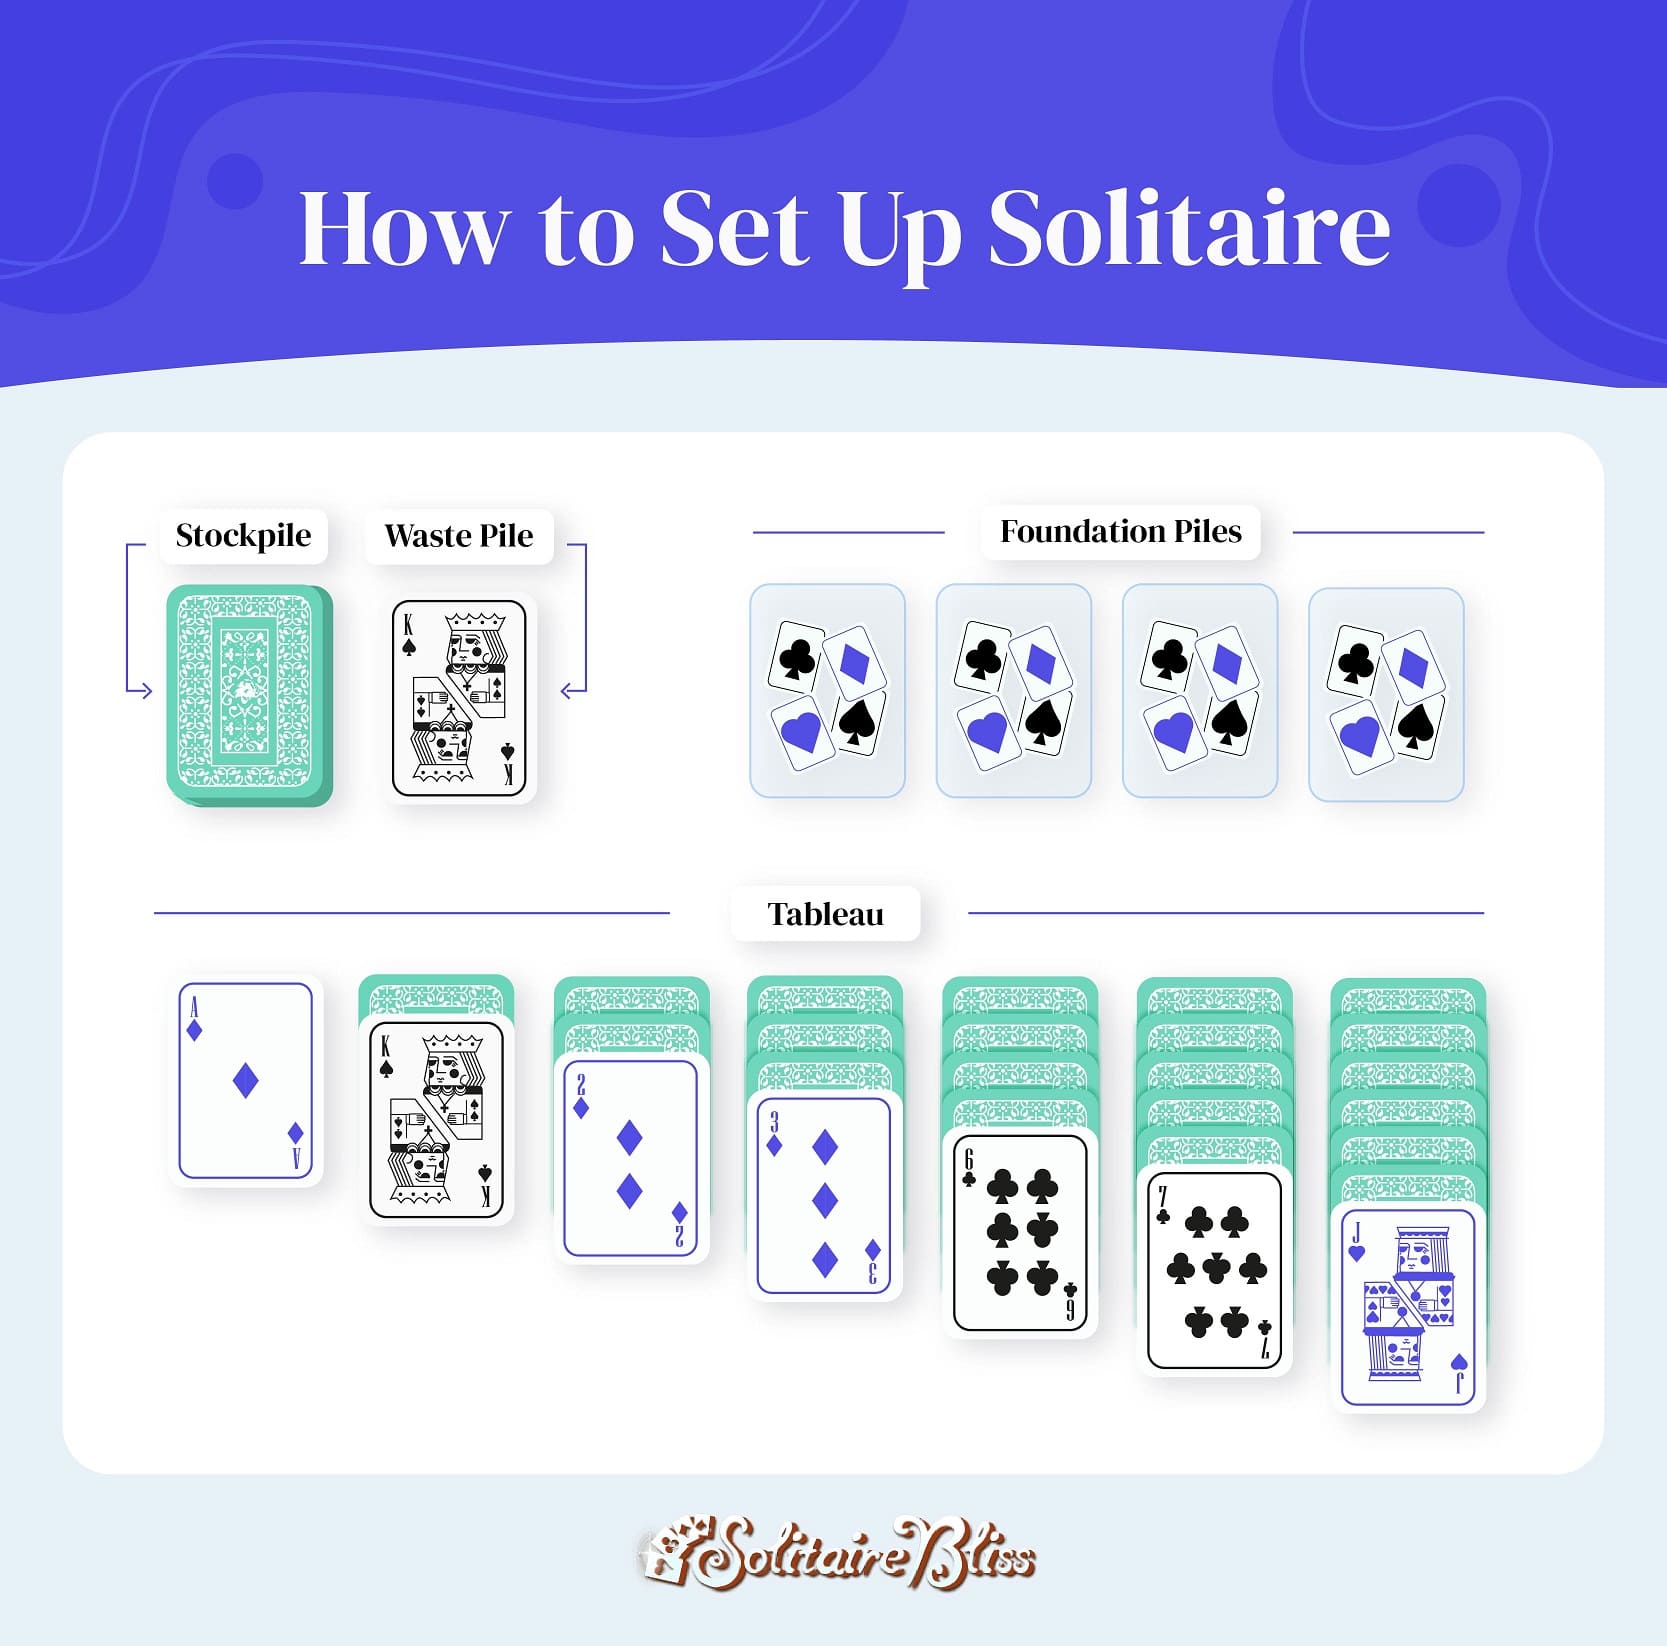 Solitaire – Tipos de Solitaire e Suas Diferenças